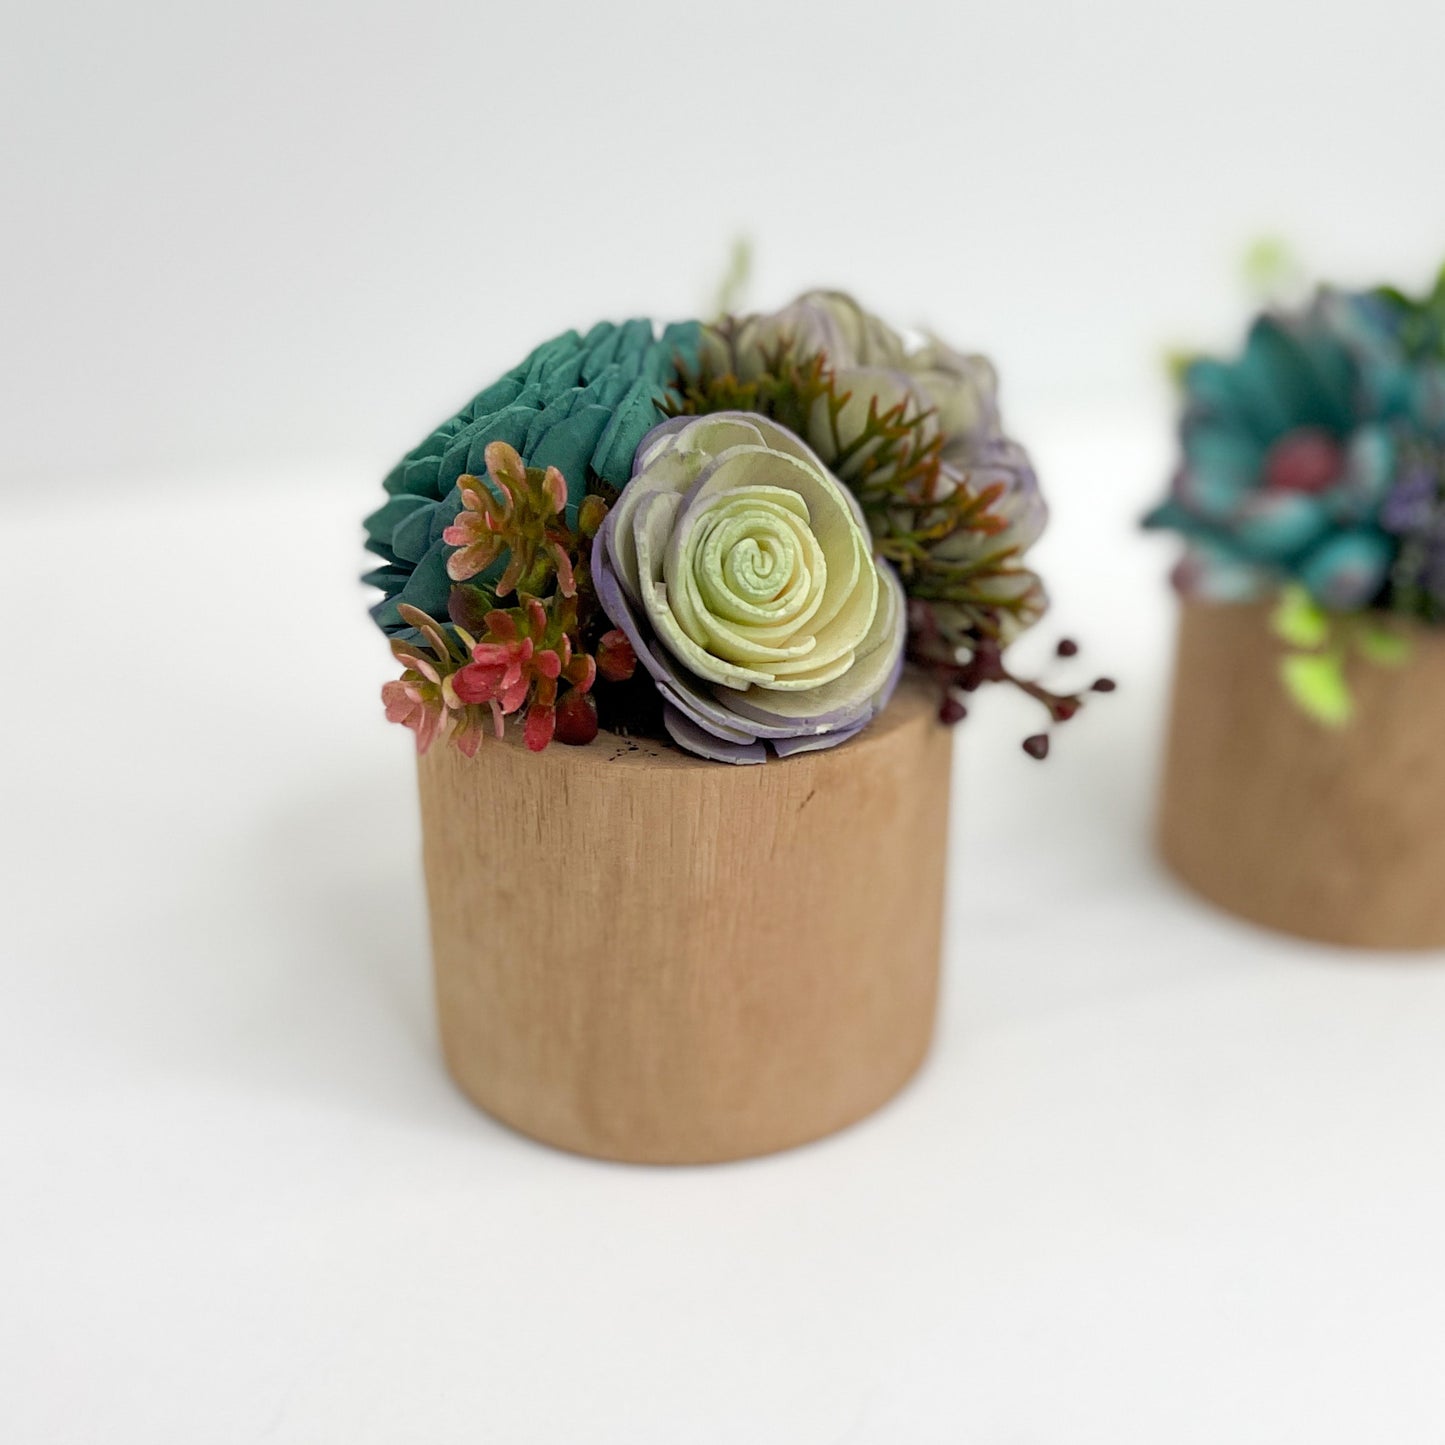 Mini Succulent Garden- in wooden vase